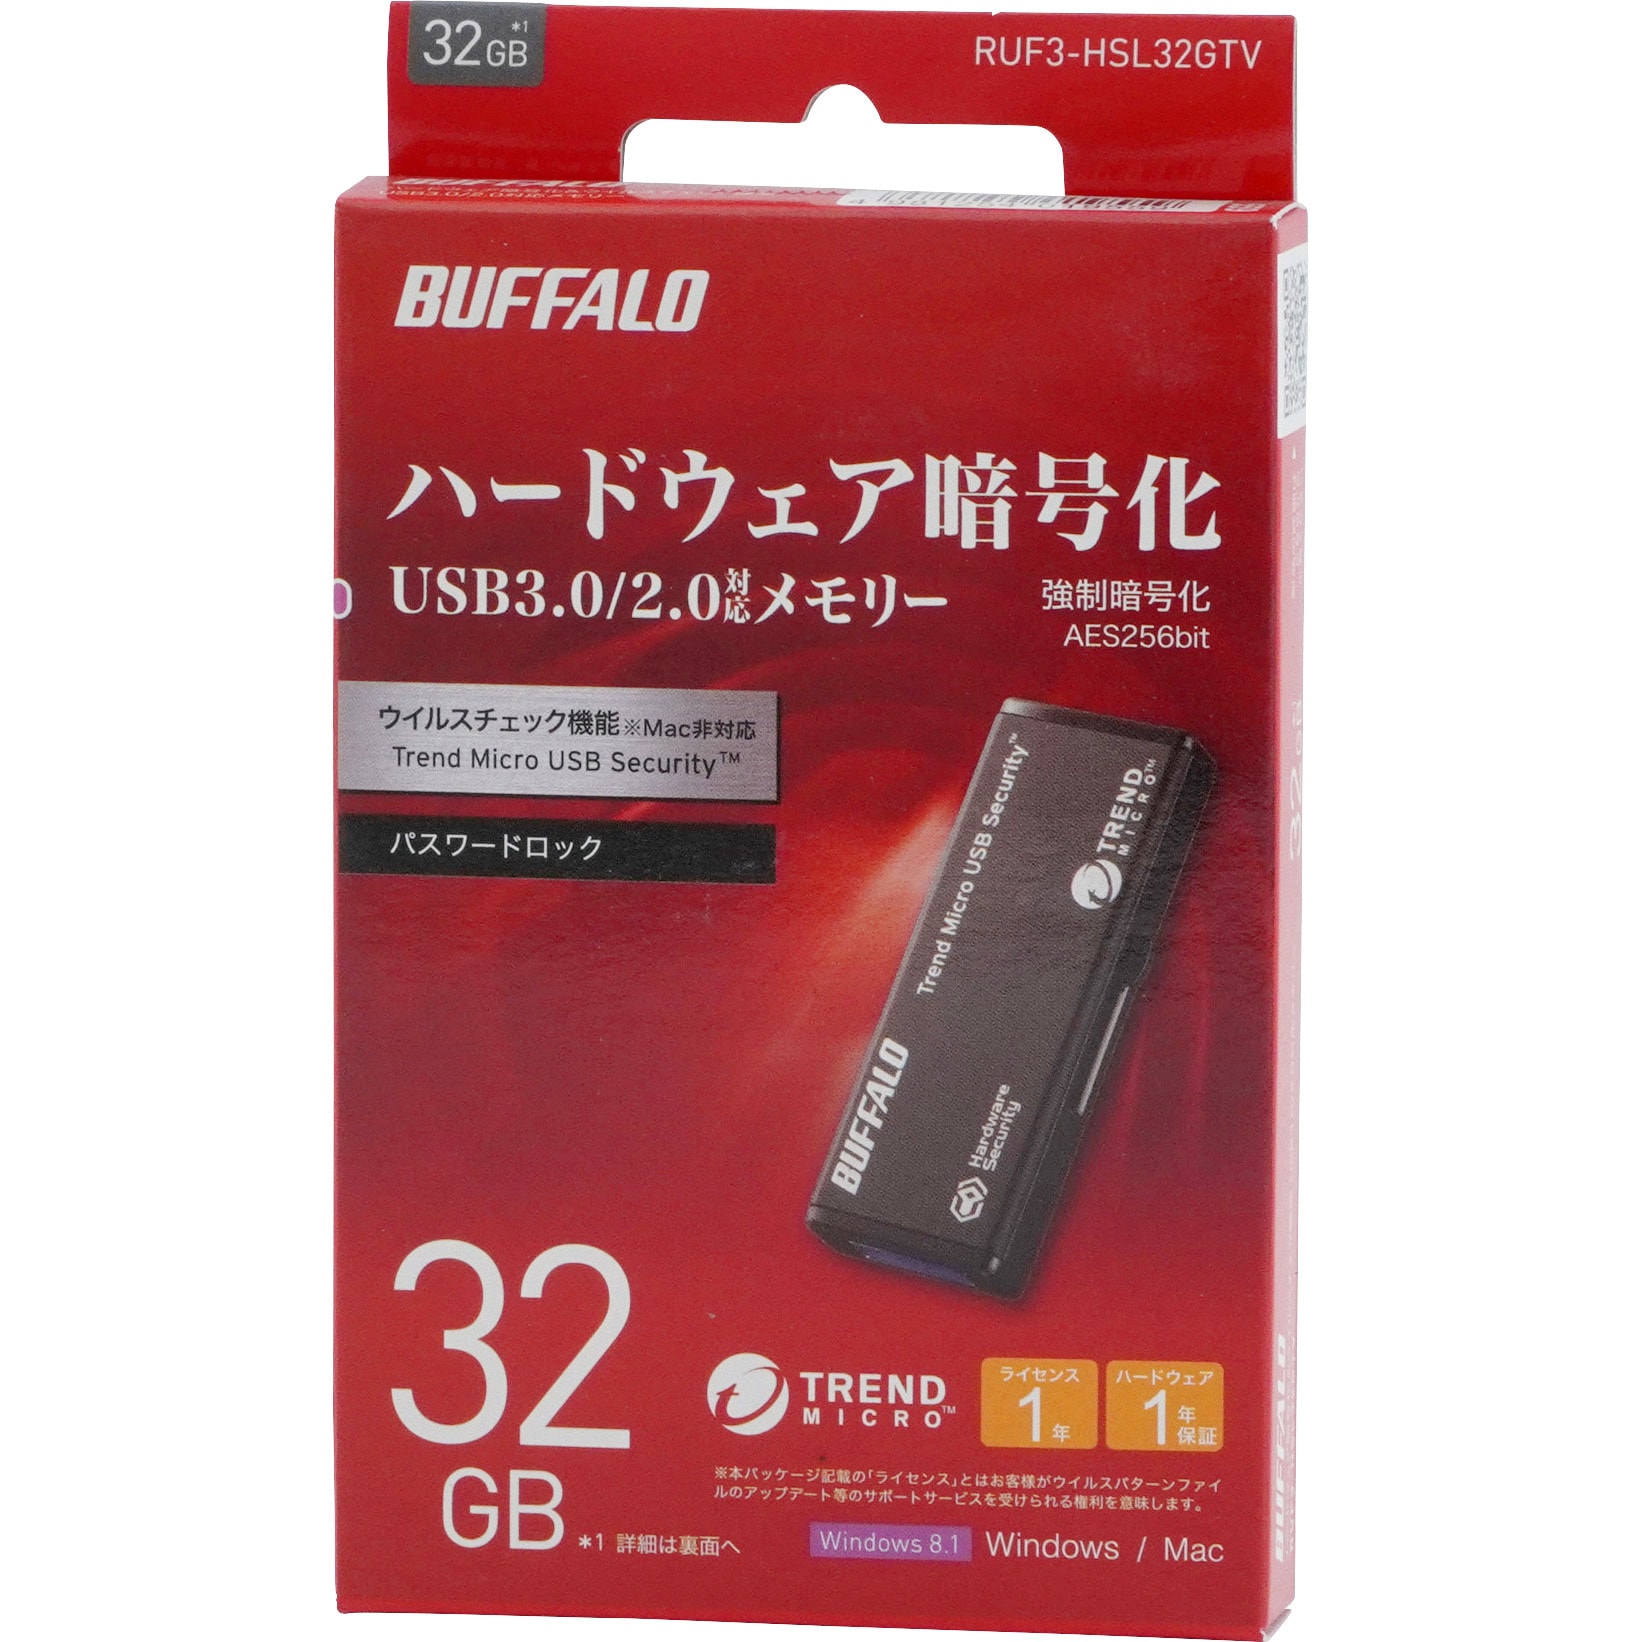 数量限定アウトレット最安価格 BUFFALO USB3.0対応セキュリティーUSB